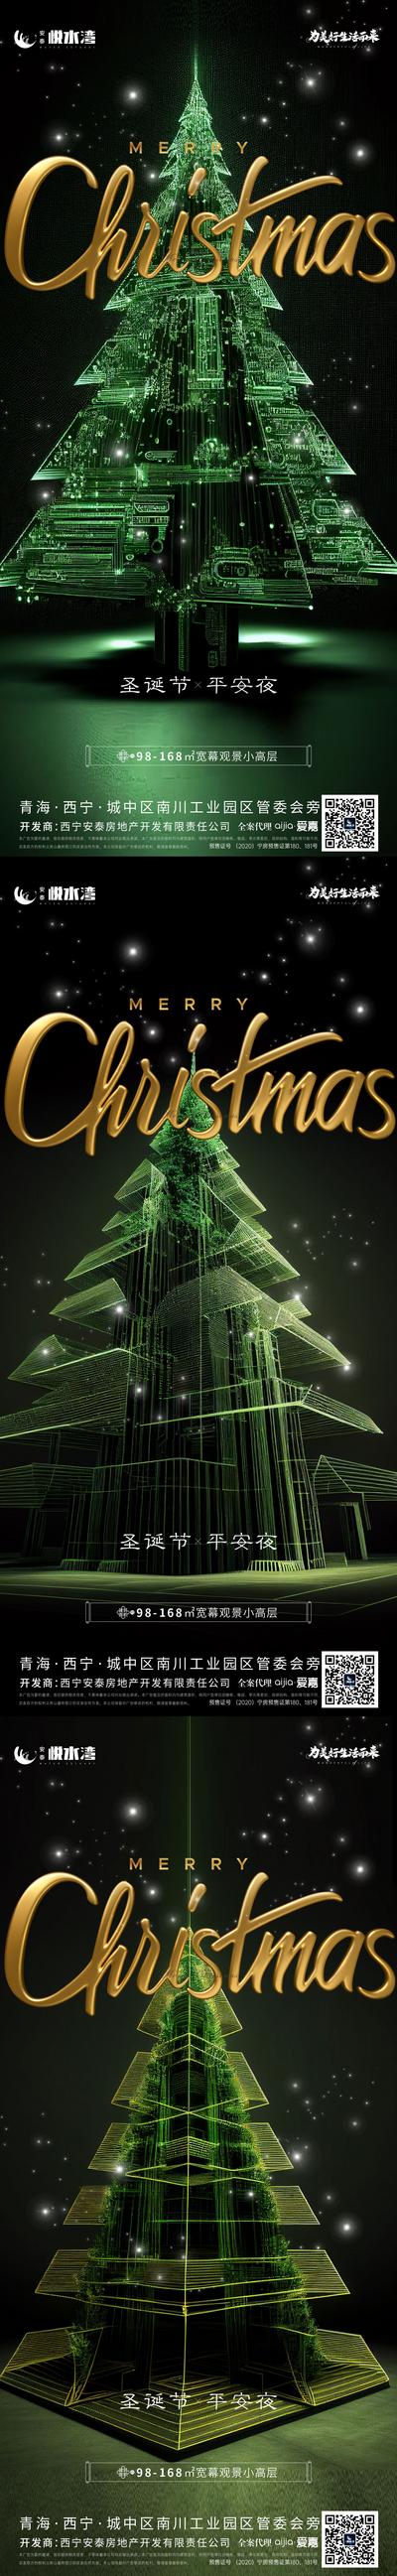 南门网 海报 公历节日 圣诞节 酒吧 圣诞树 科技 创意 系列